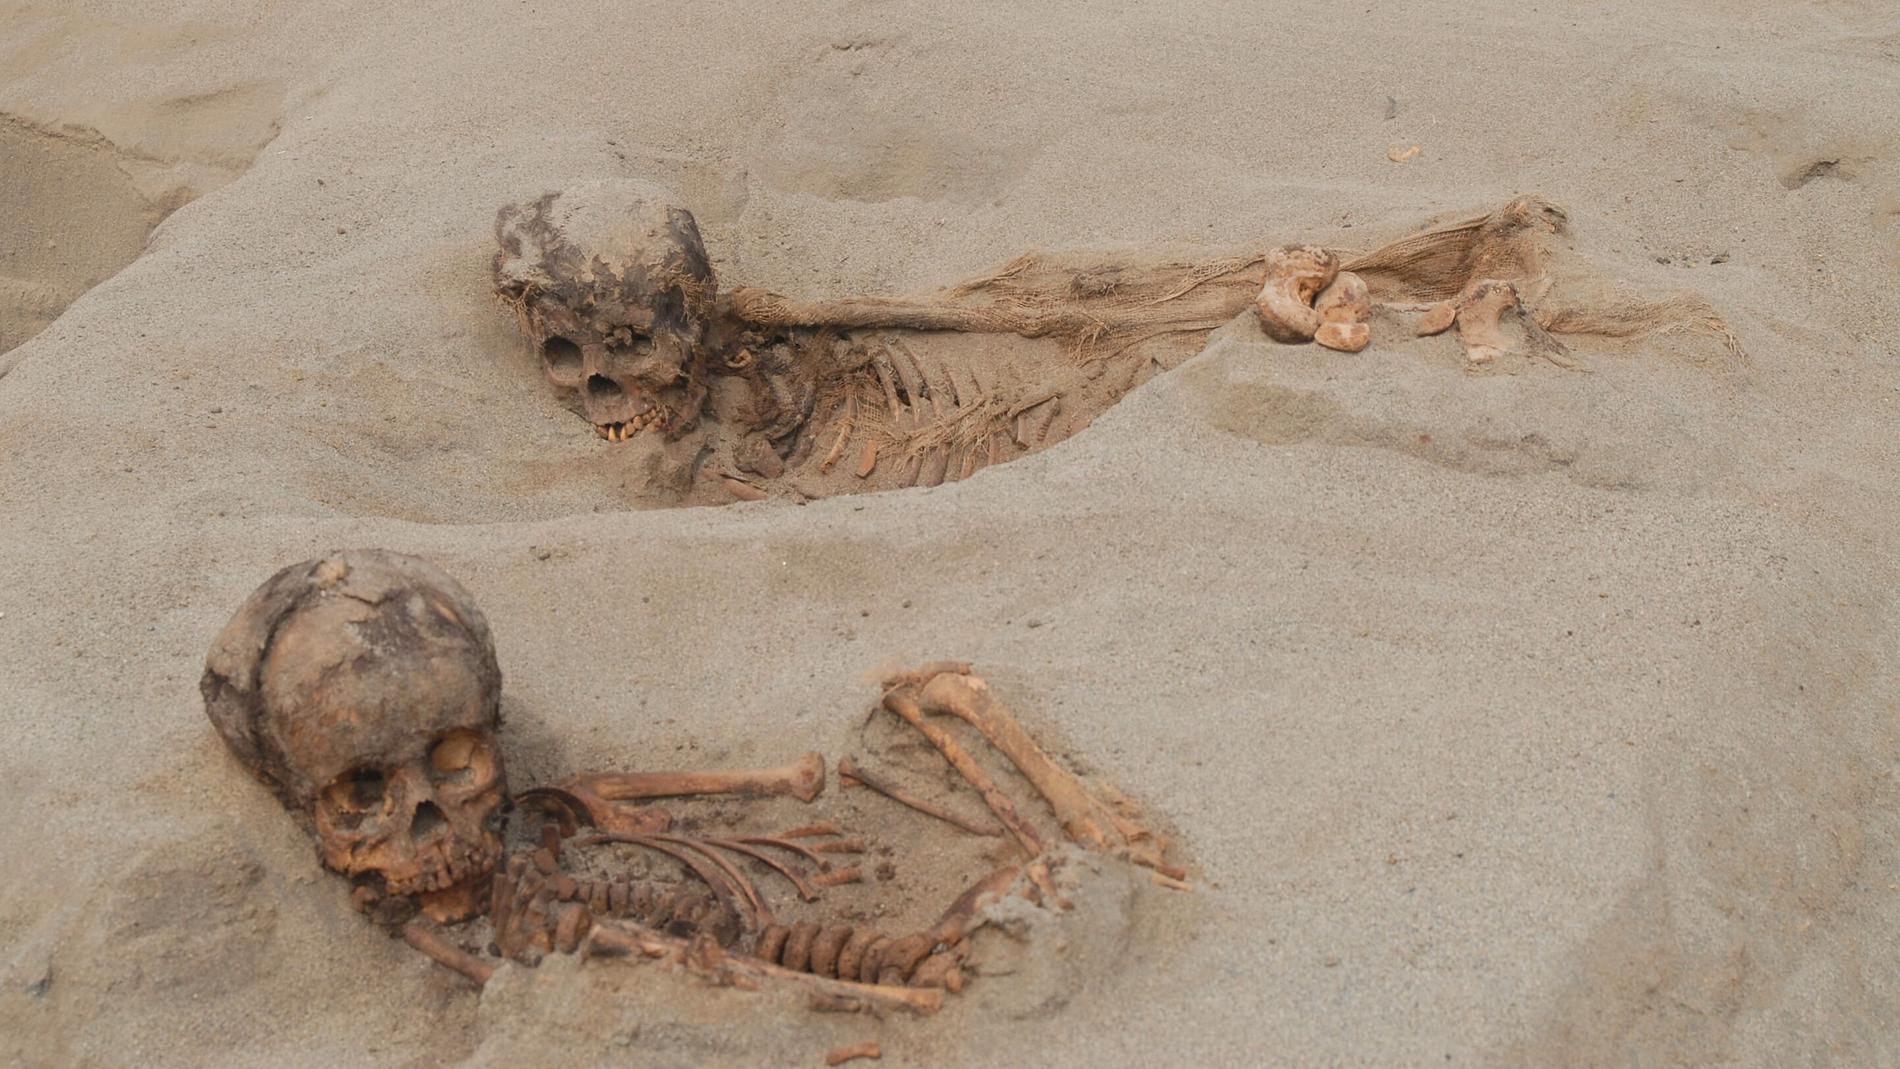 Arkeologer har hittat kvarlevorna efter 140 barn och 200 lamadjur som offrades i dagens Peru i mitten av 1400-talet.